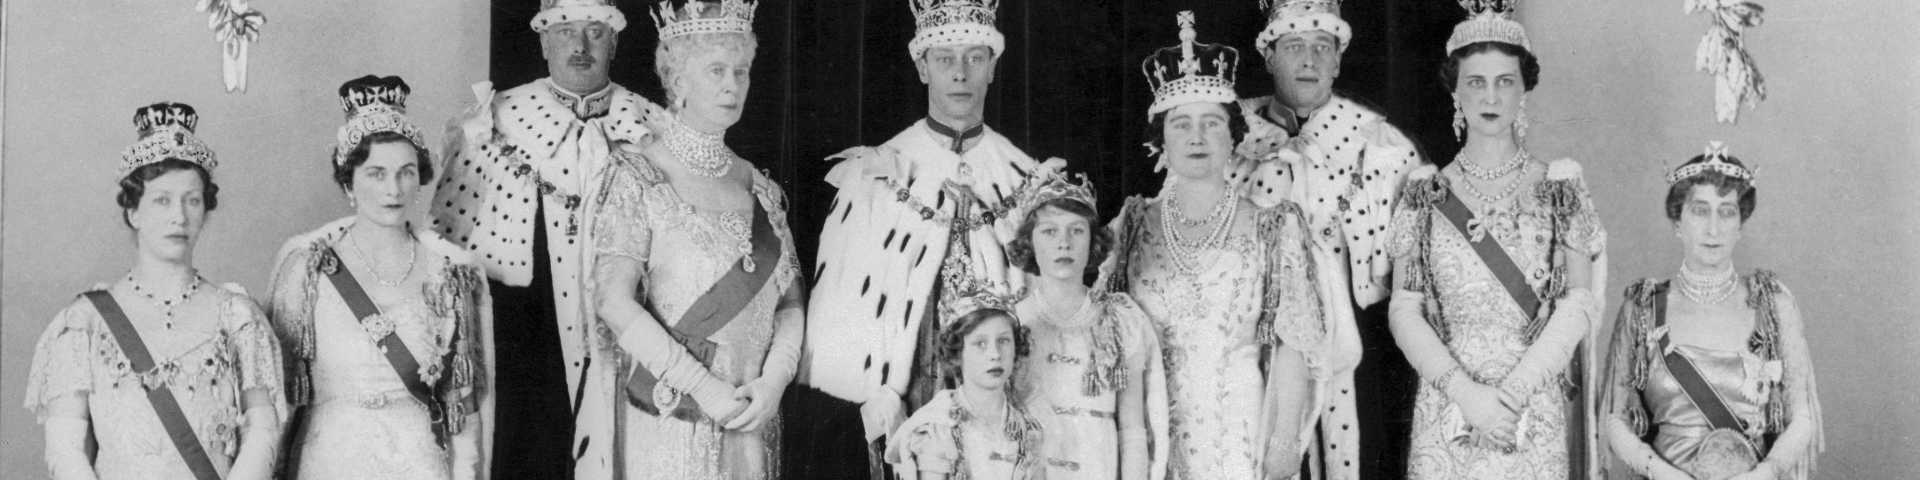 Српски пабирци у романтичној саги о најважнијем краљевском пару XX века: Џорџ VI и Елизабета, брак који је спасио монархију